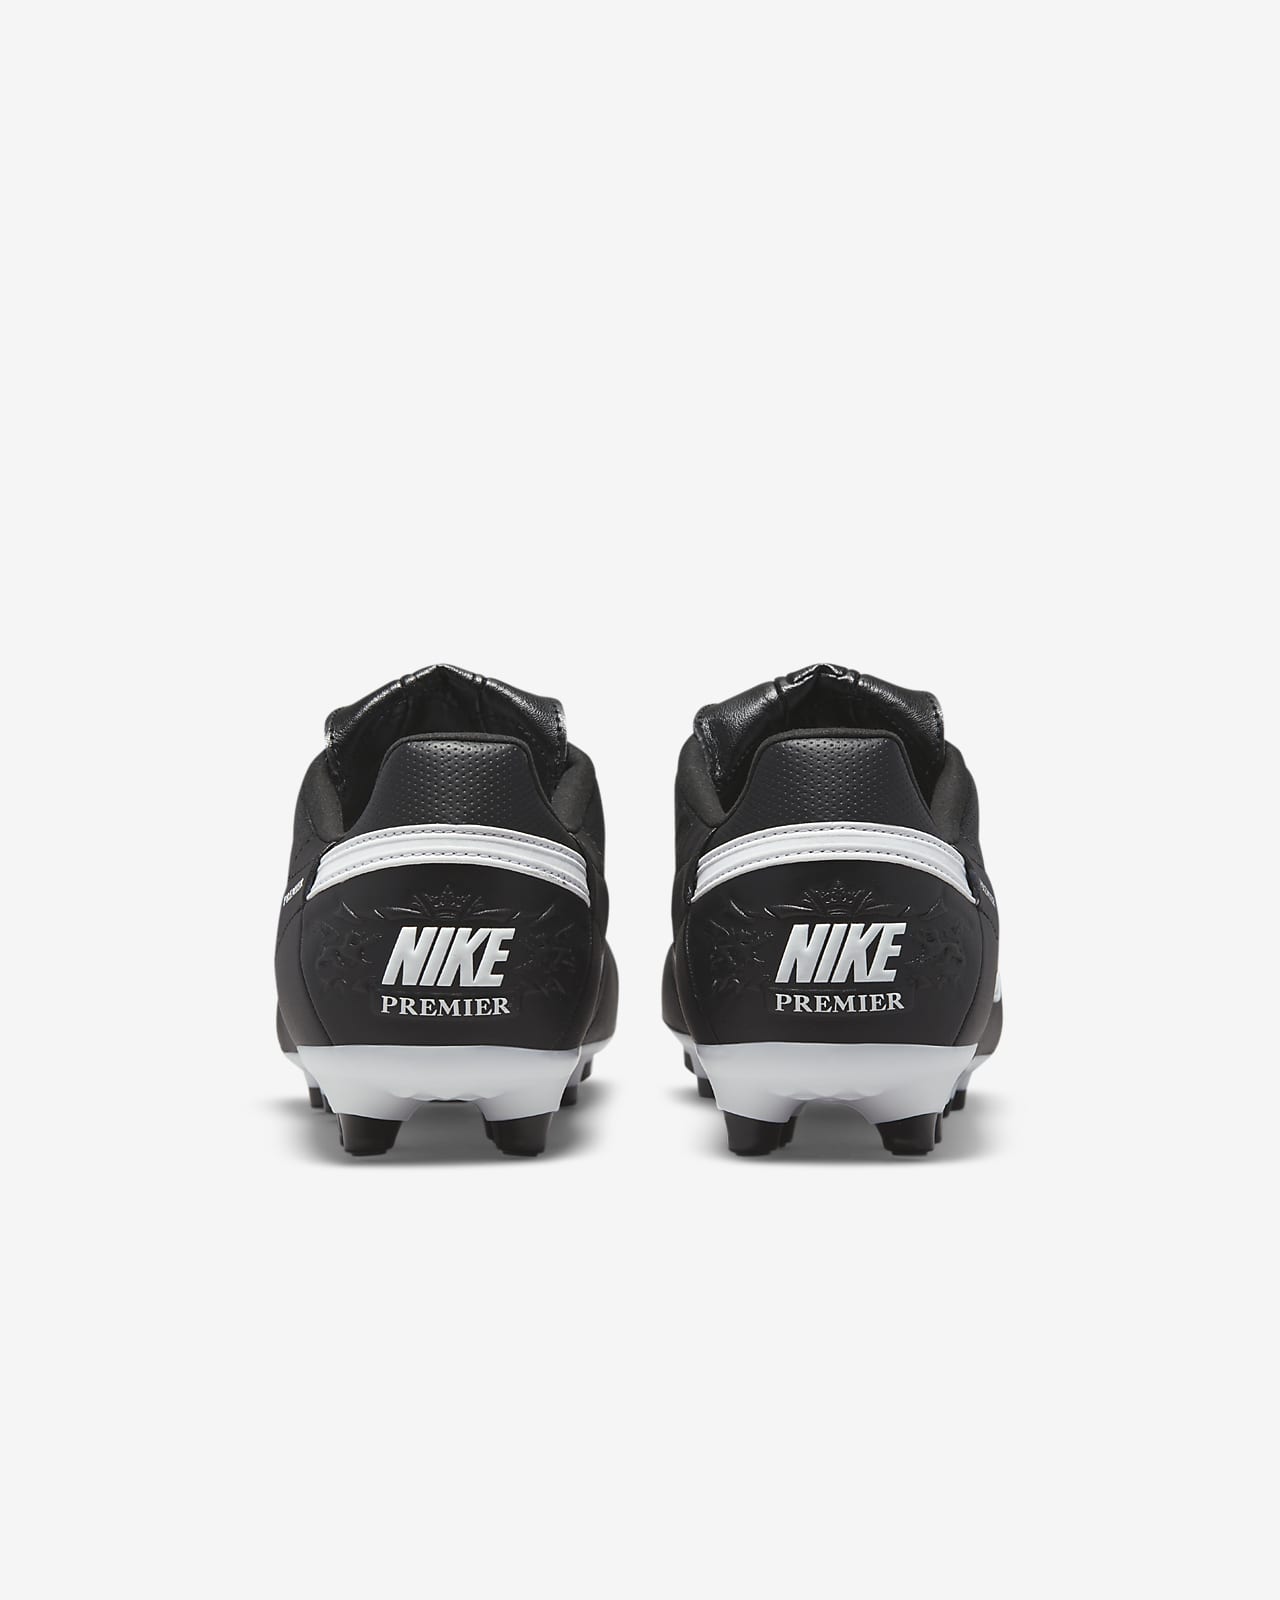 NikePremier Football Nike ID